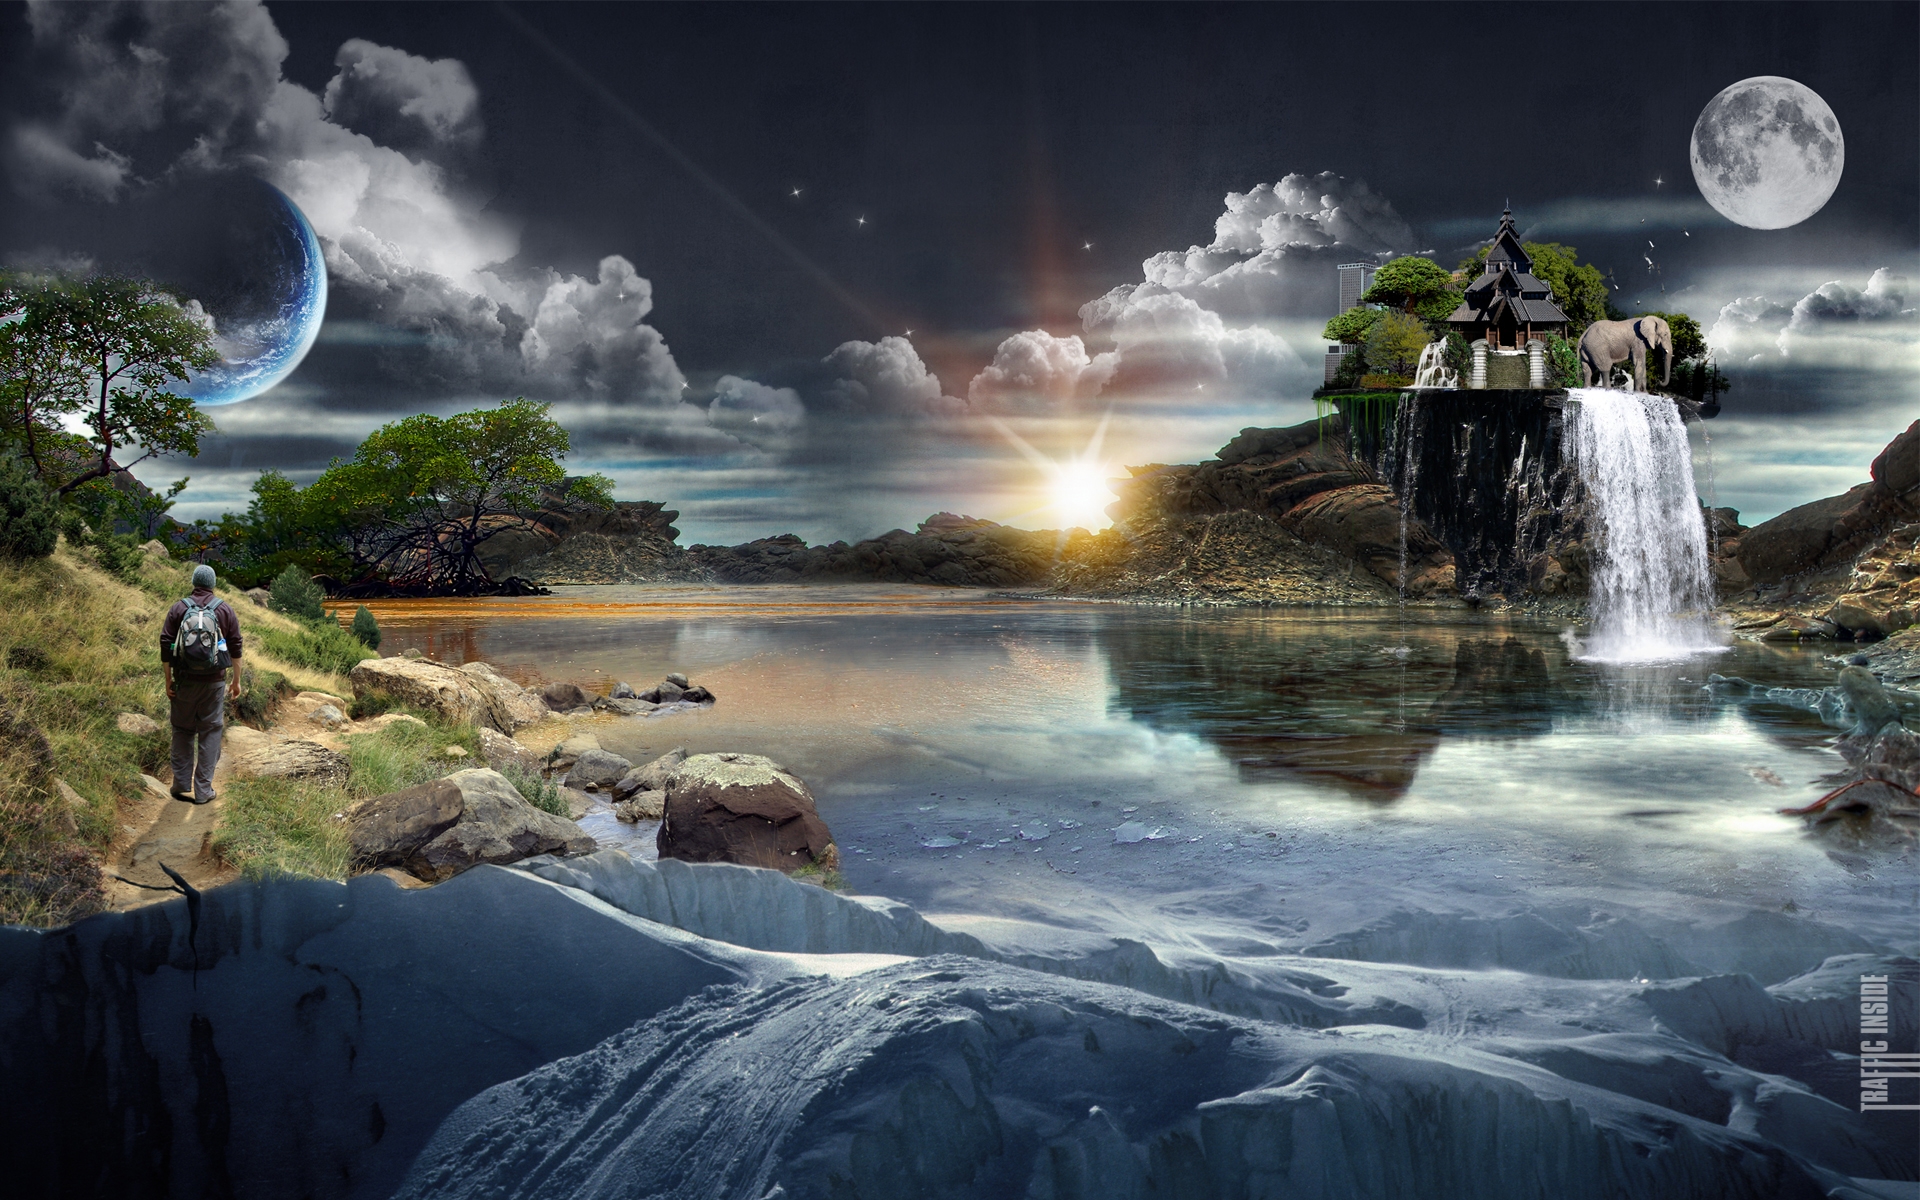 Best Scenery Hd Pictures - Surreal Desktop Backgrounds - 1920x1200 Wallpaper  